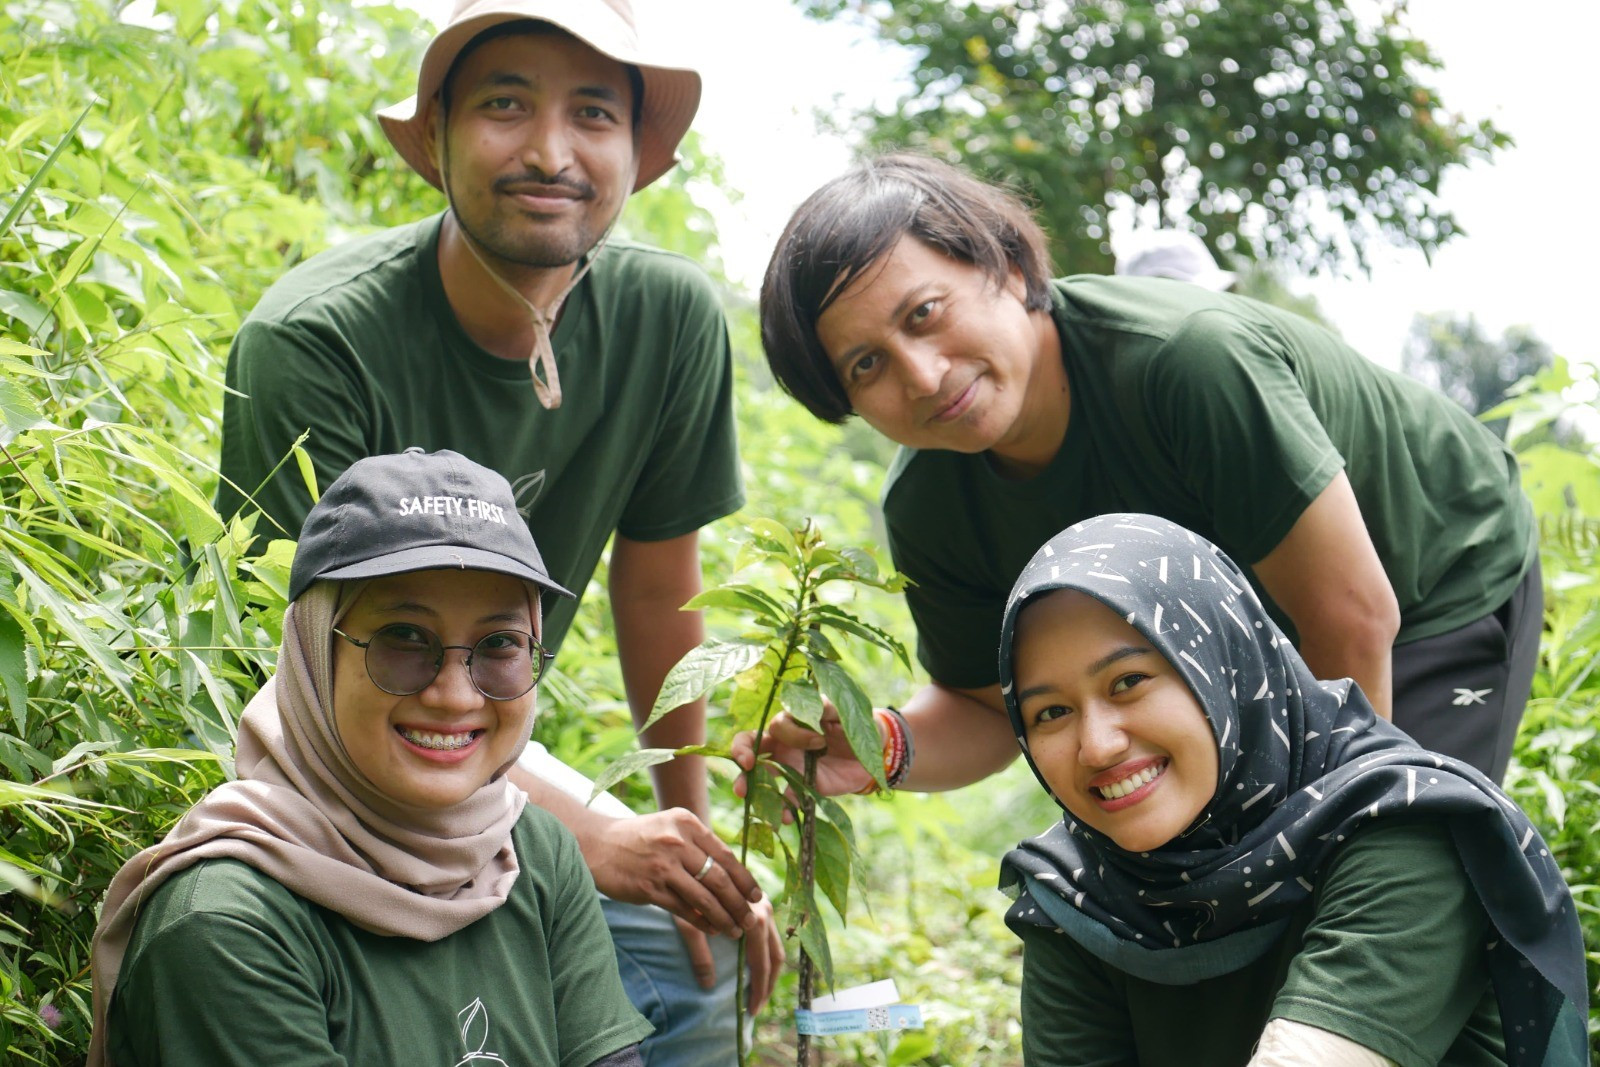 Cargill dan Petani Lokal Pantai Konservasi 10.000 Pohon di Hutan Desa Pasuruan - JPNN.com Jatim